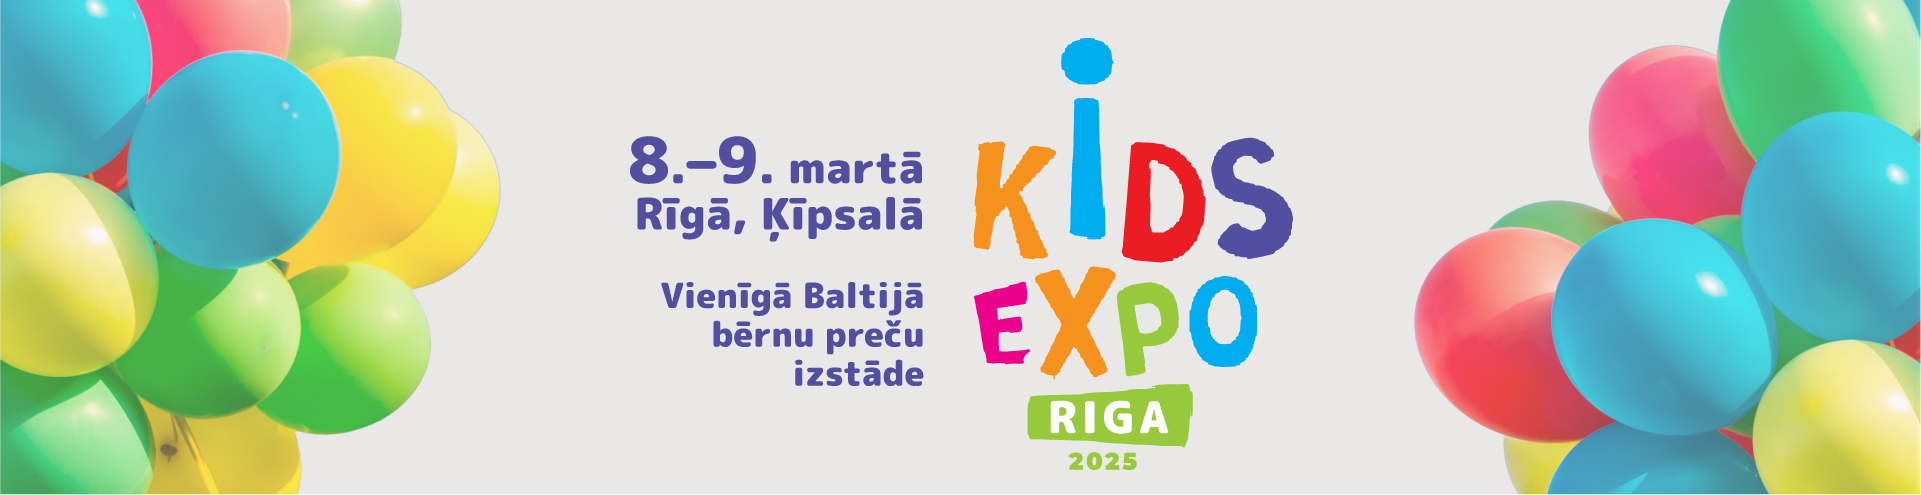 Header – Kids Expo Riga 2025